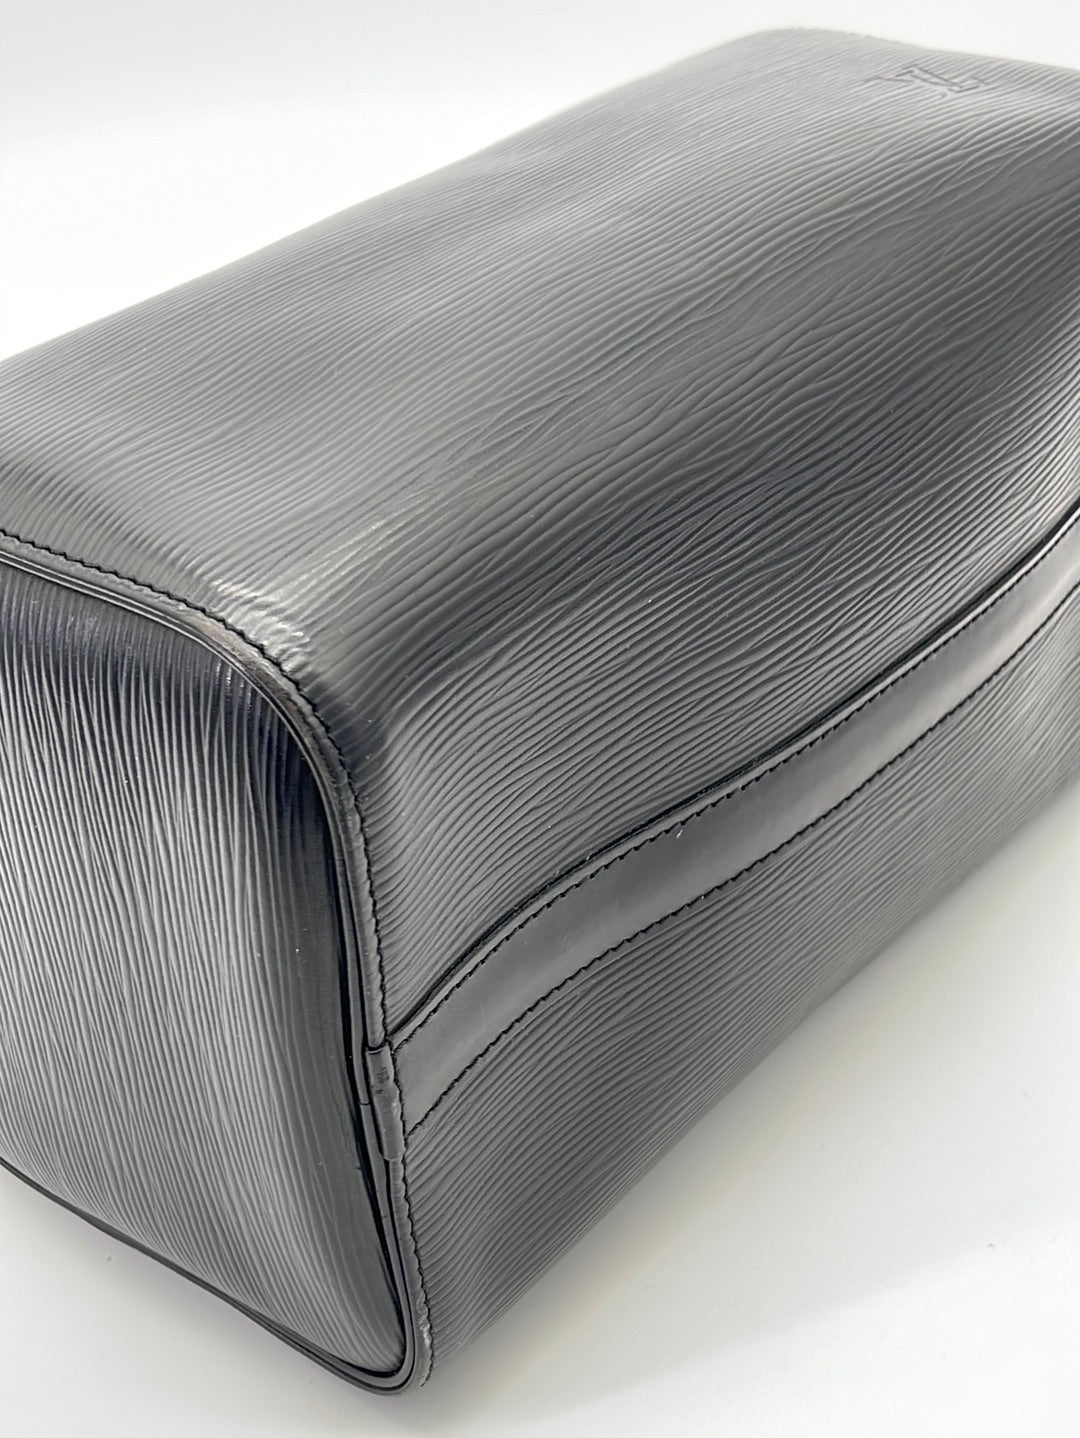 Louis Vuitton Speedy 25 Black EPI Leather Handbag VI0994